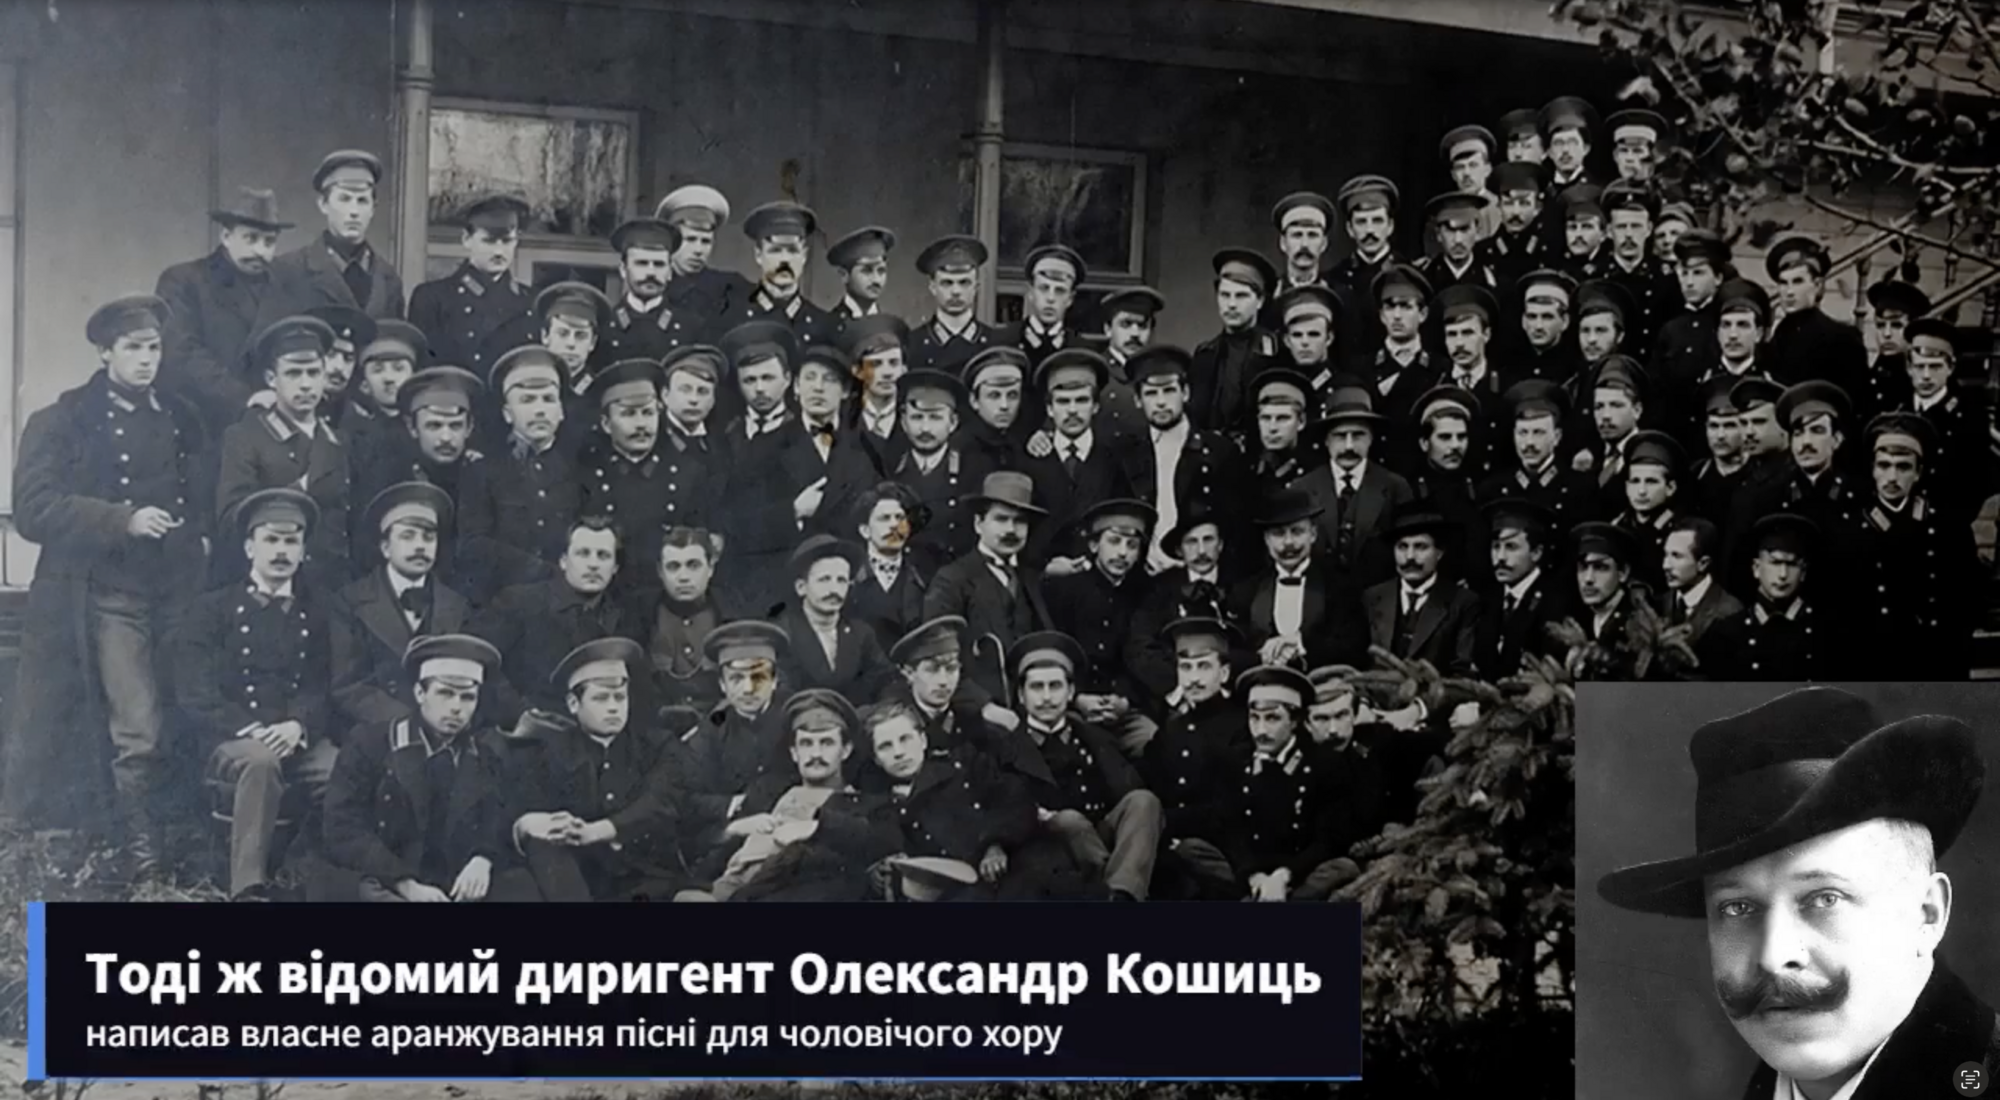 Мережу підкорив запис 1944 року, де український хор виконує "Ой у лузі червона калина" в аранжуванні Олександра Кошиця